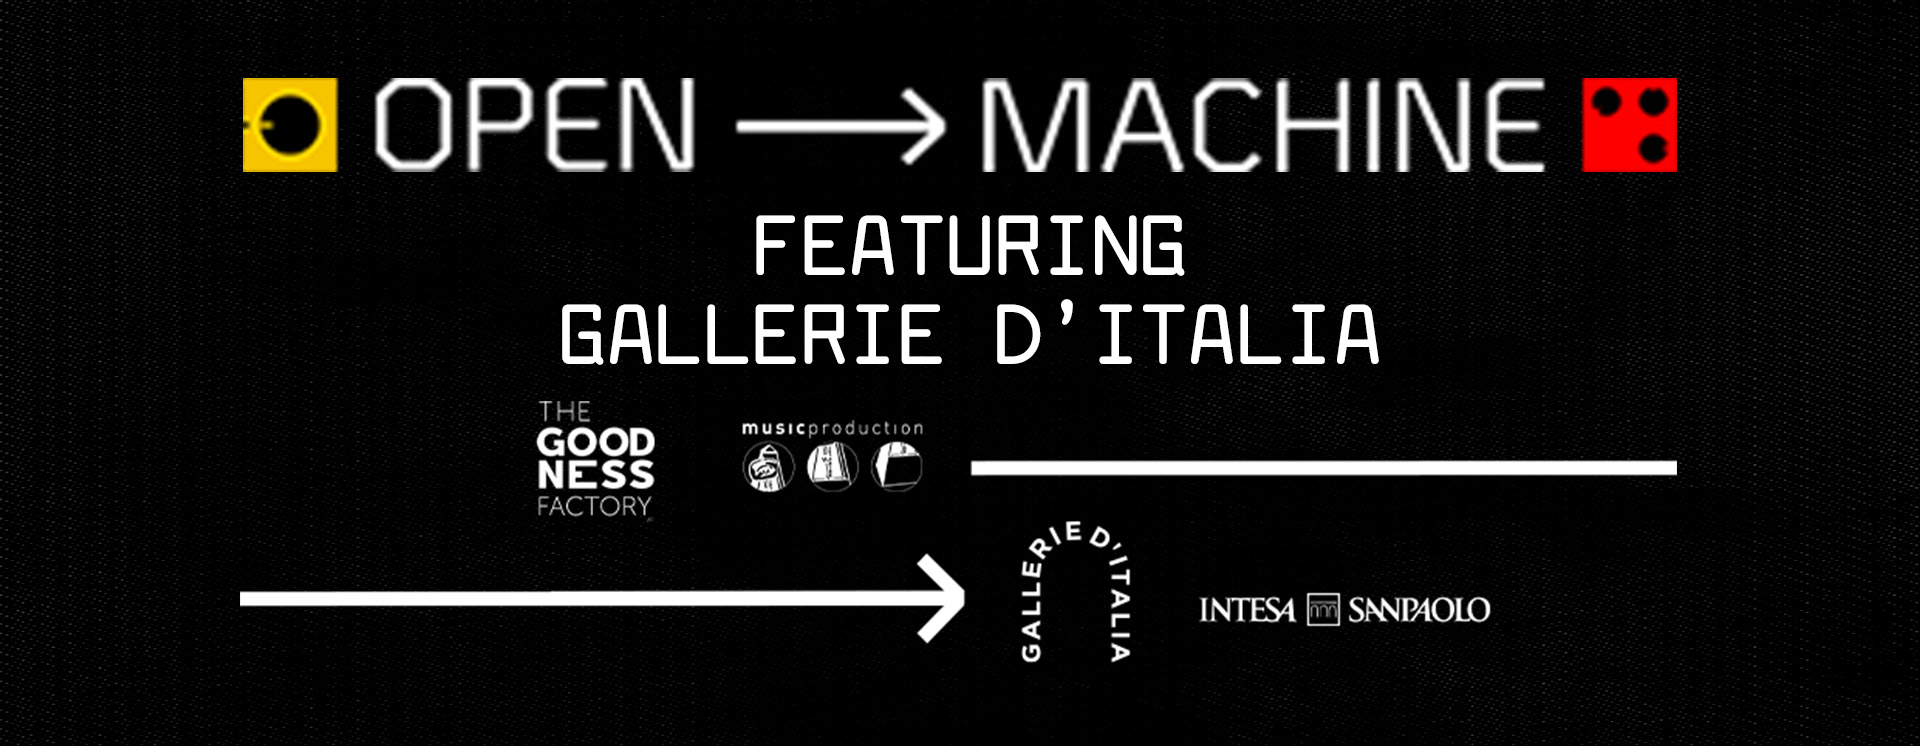 Open Machine featuring Gallerie d'Italia